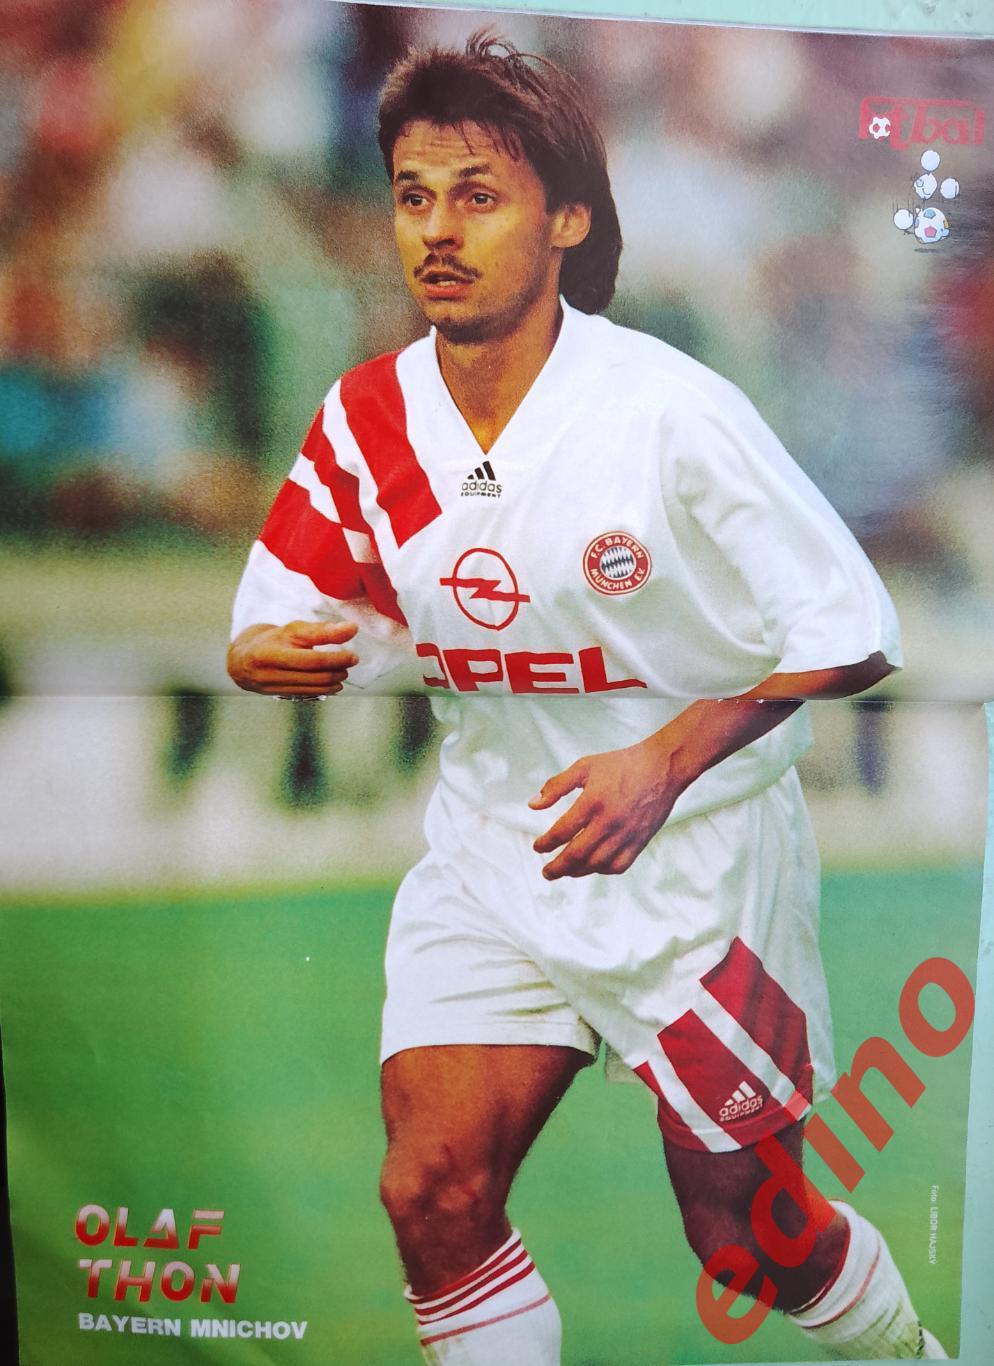 журнал Fotbal Чехия 1993 Айнтрахт/Марадона 1